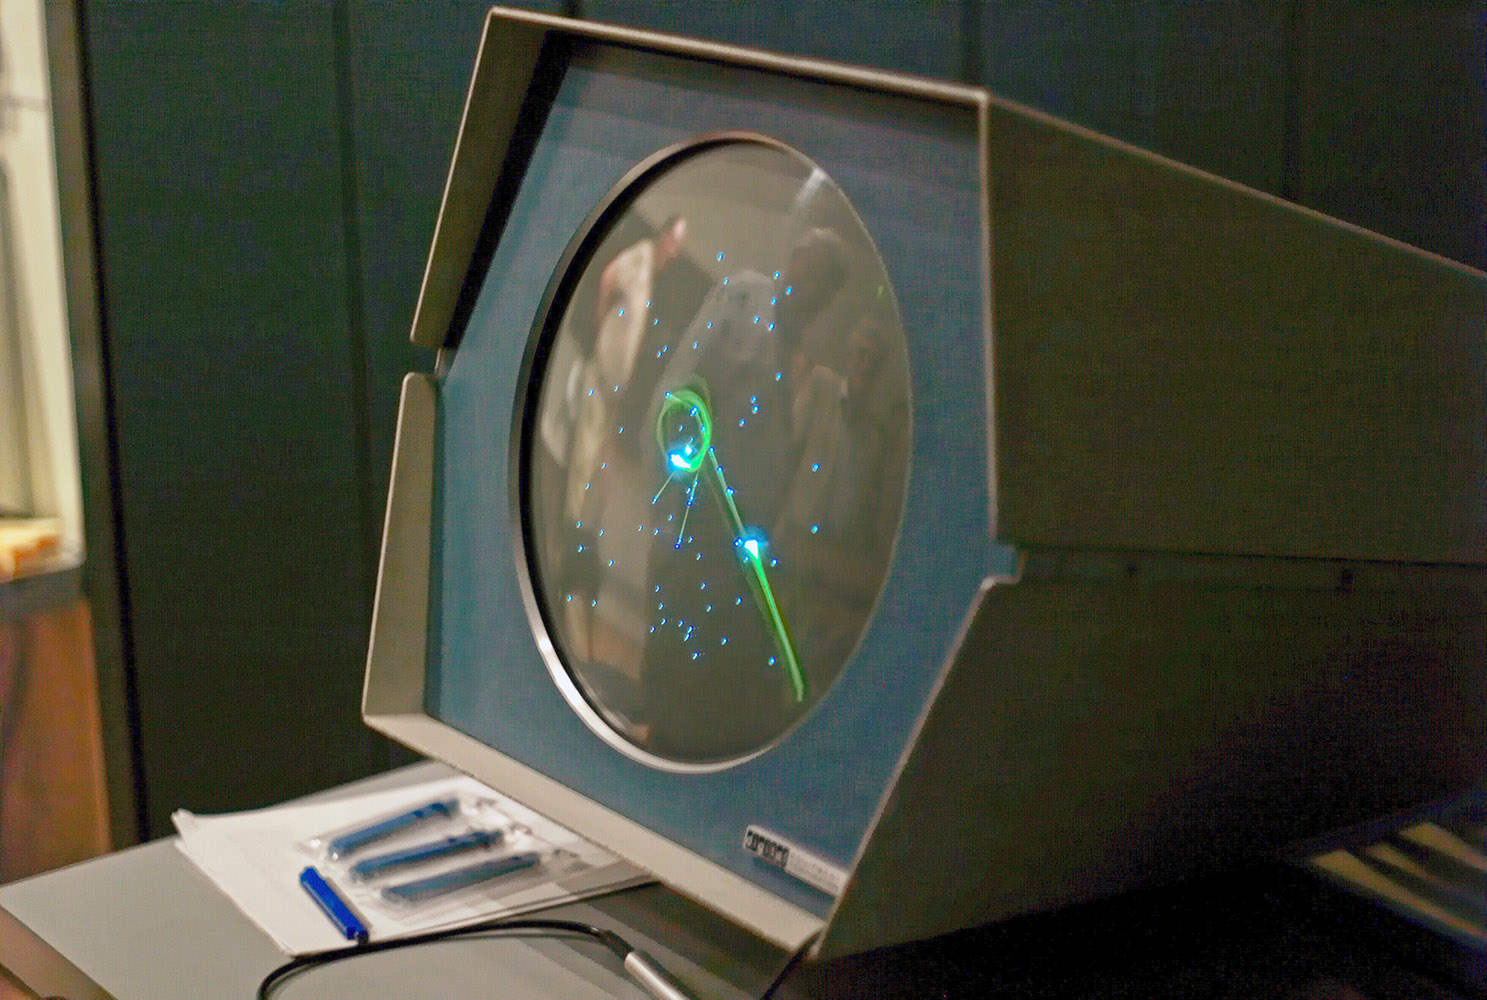 通过射线管显示器实时显示游戏画面的《太空战争》